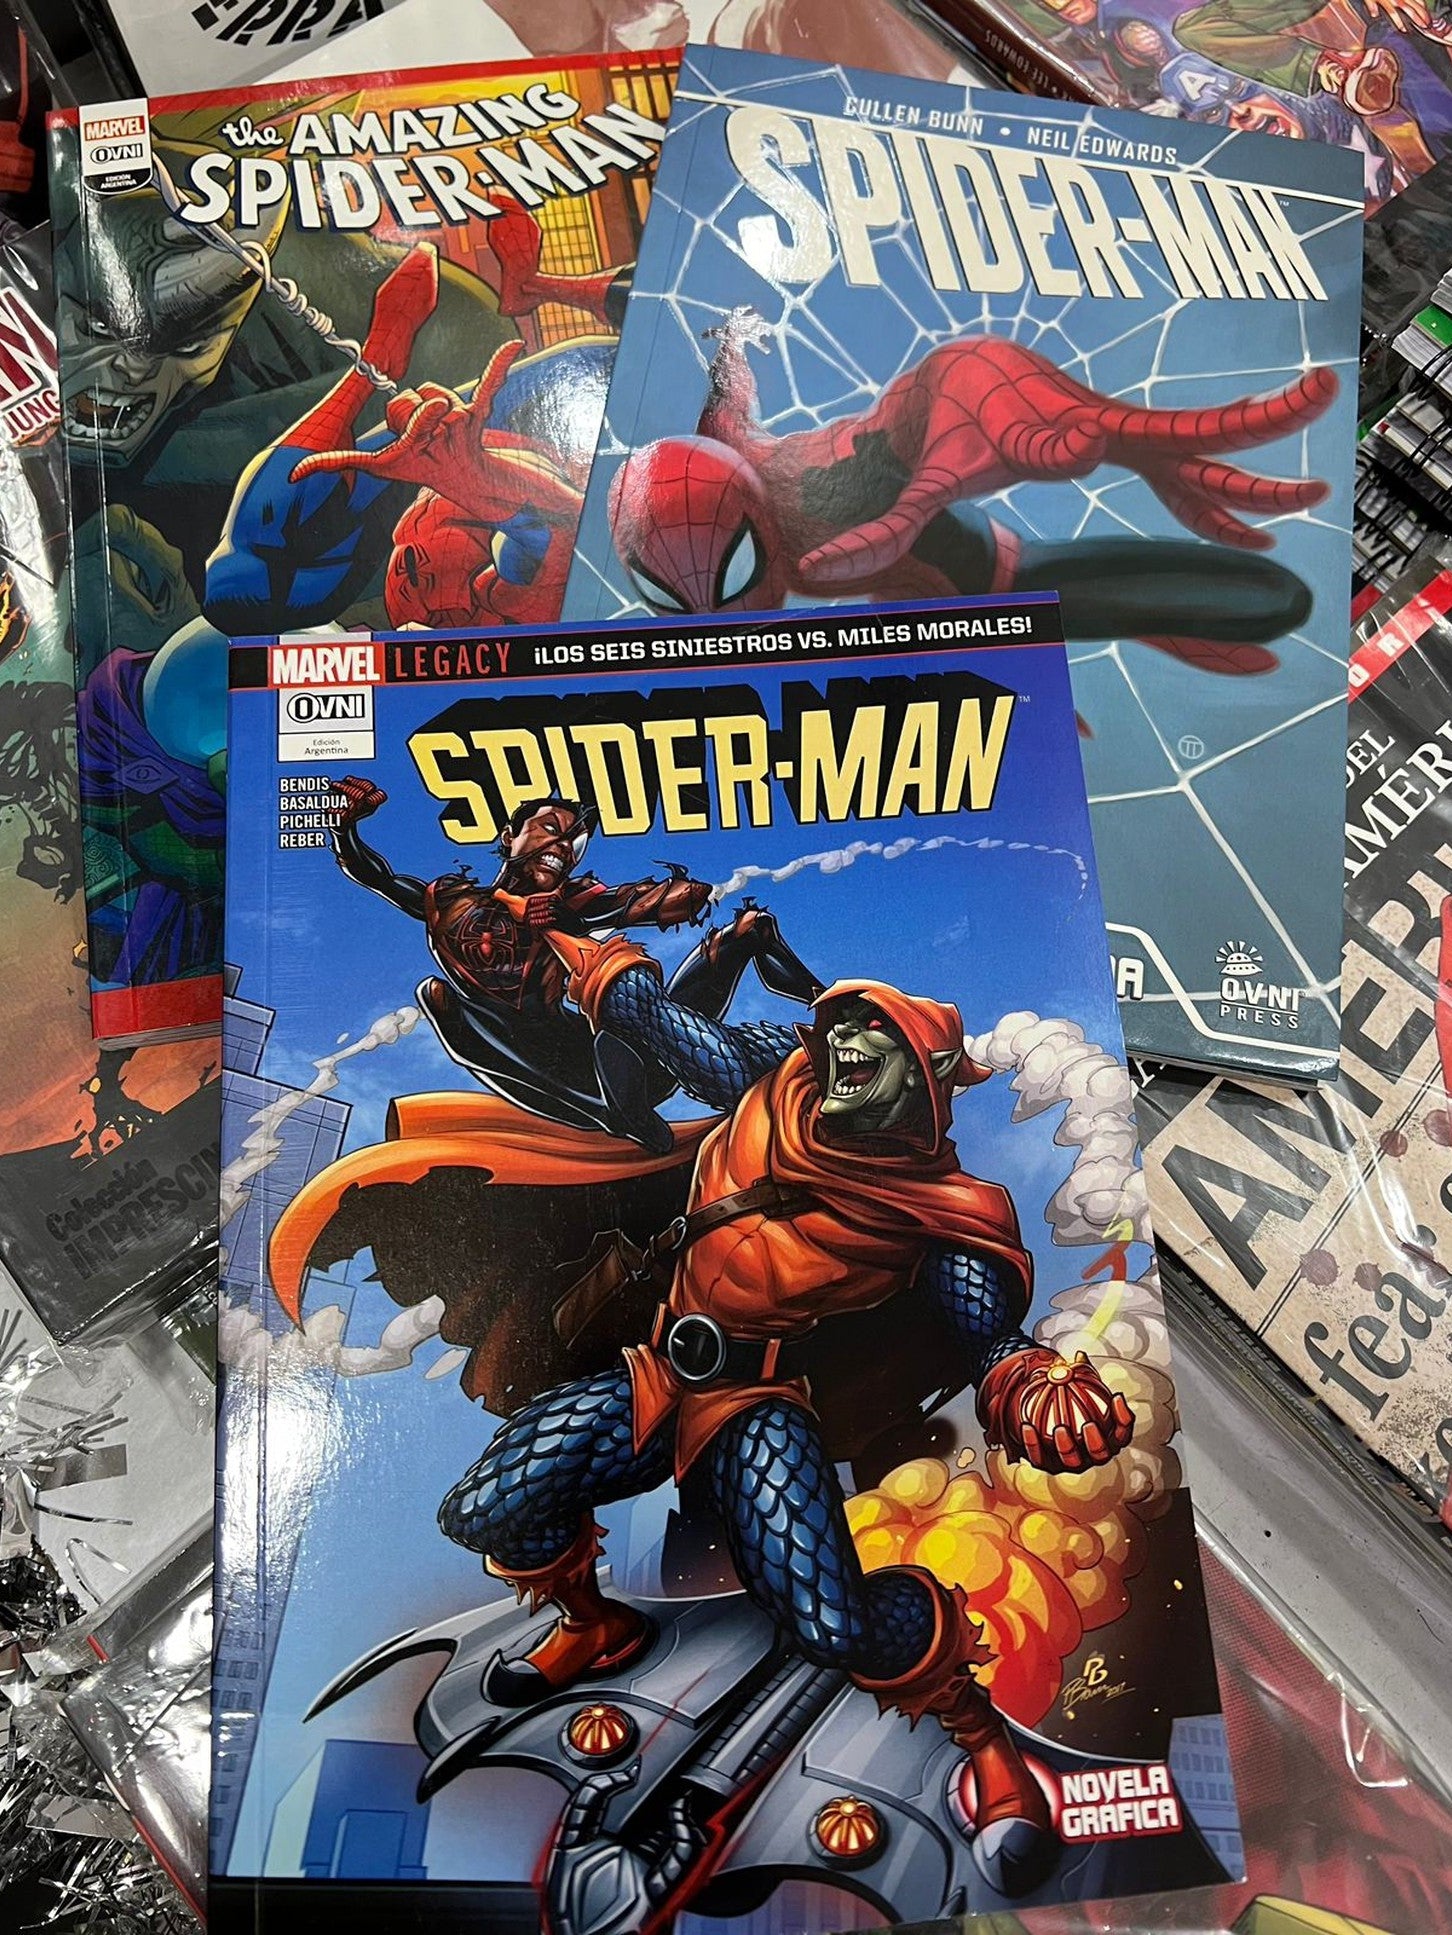 Pack Spider-man historias completas. OVNI Press ENcuadrocomics